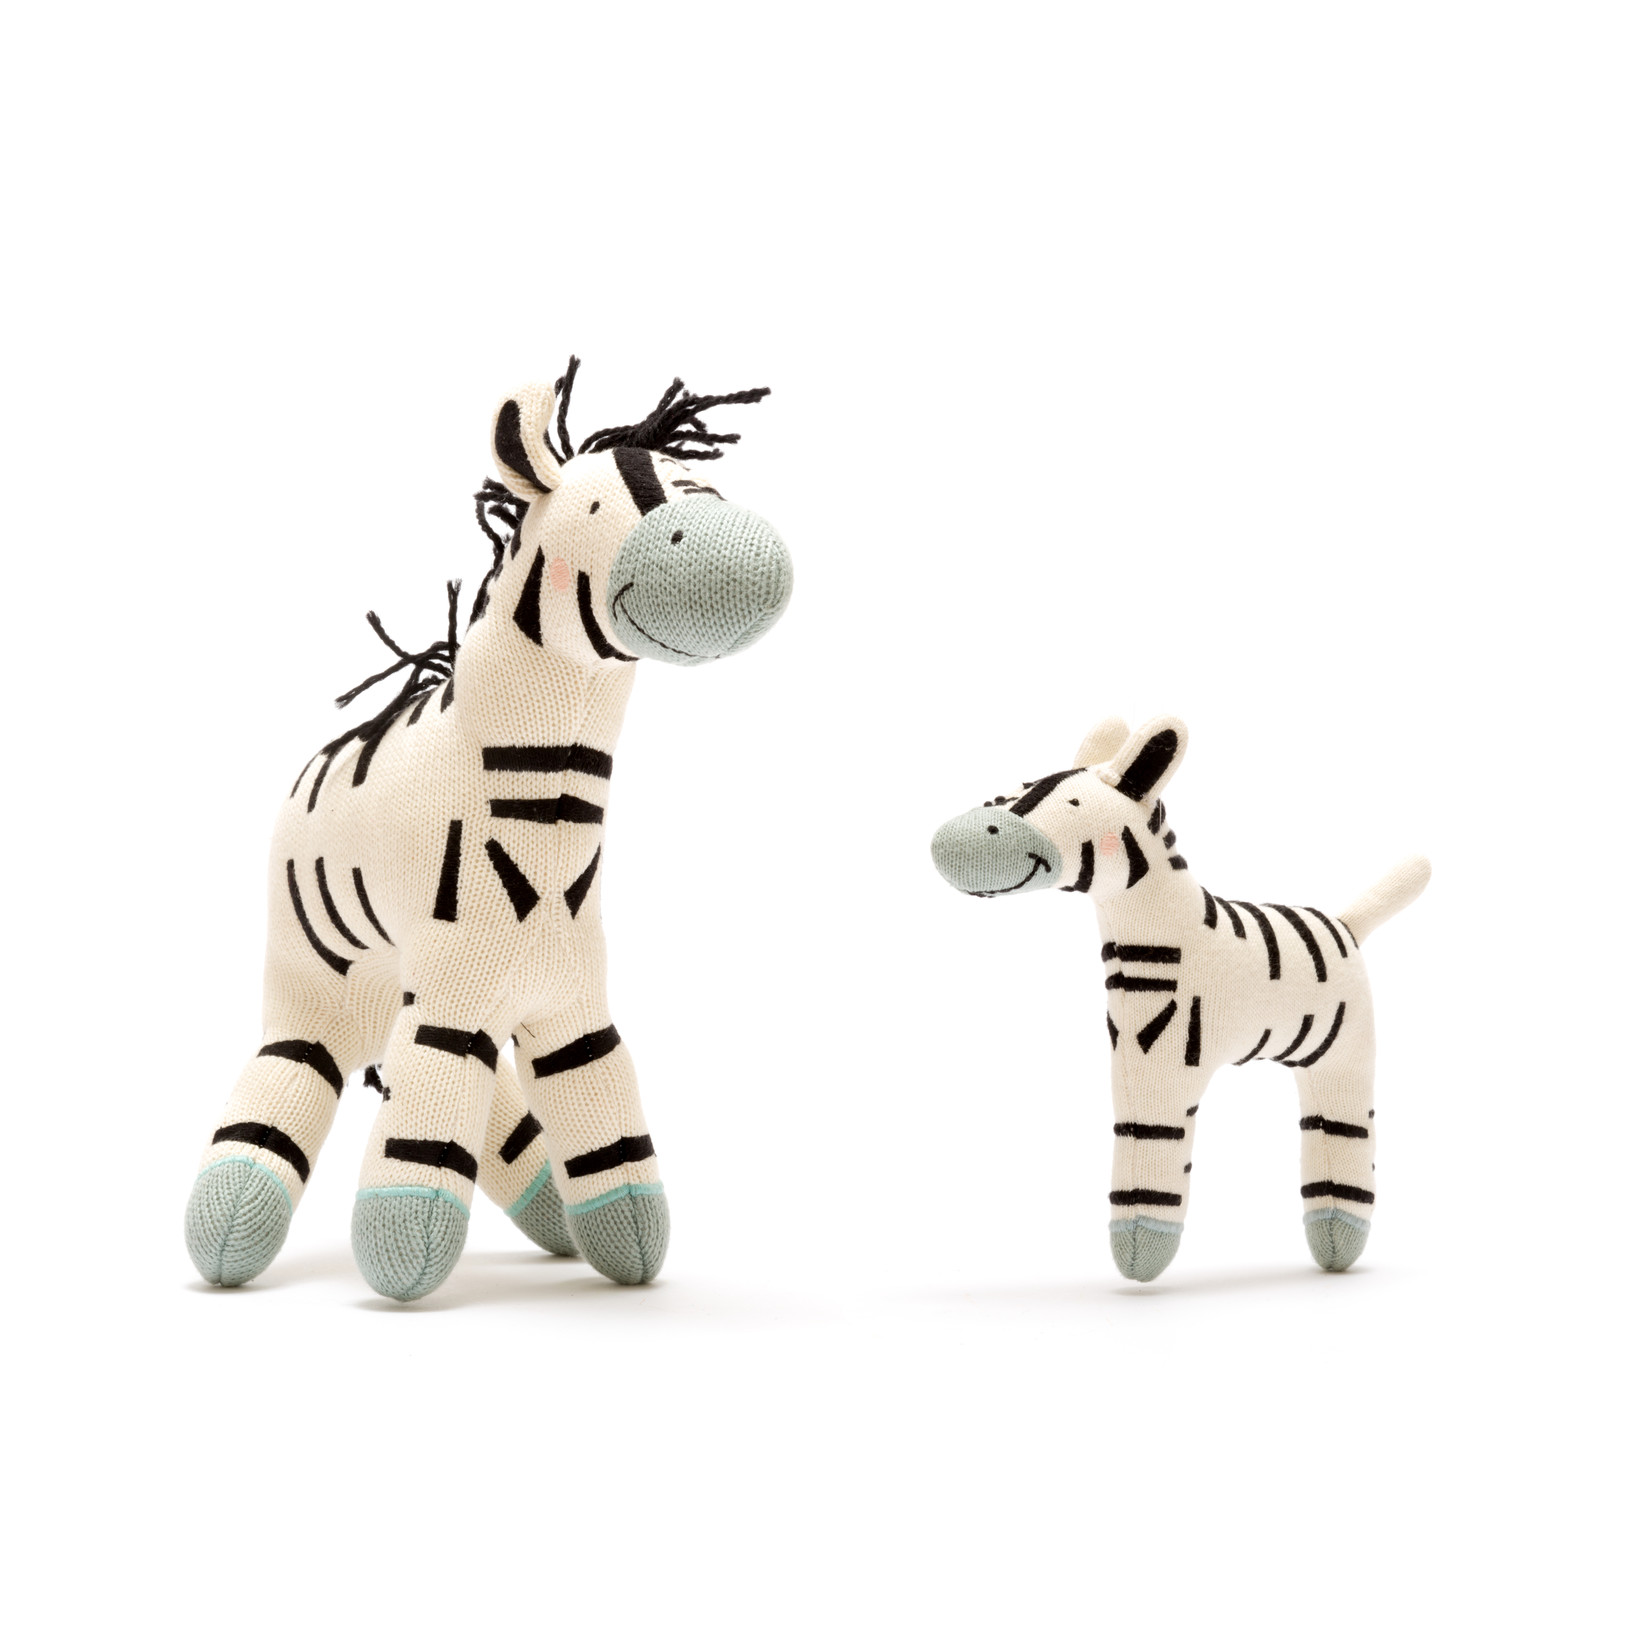 Large Zebra Plush Toy